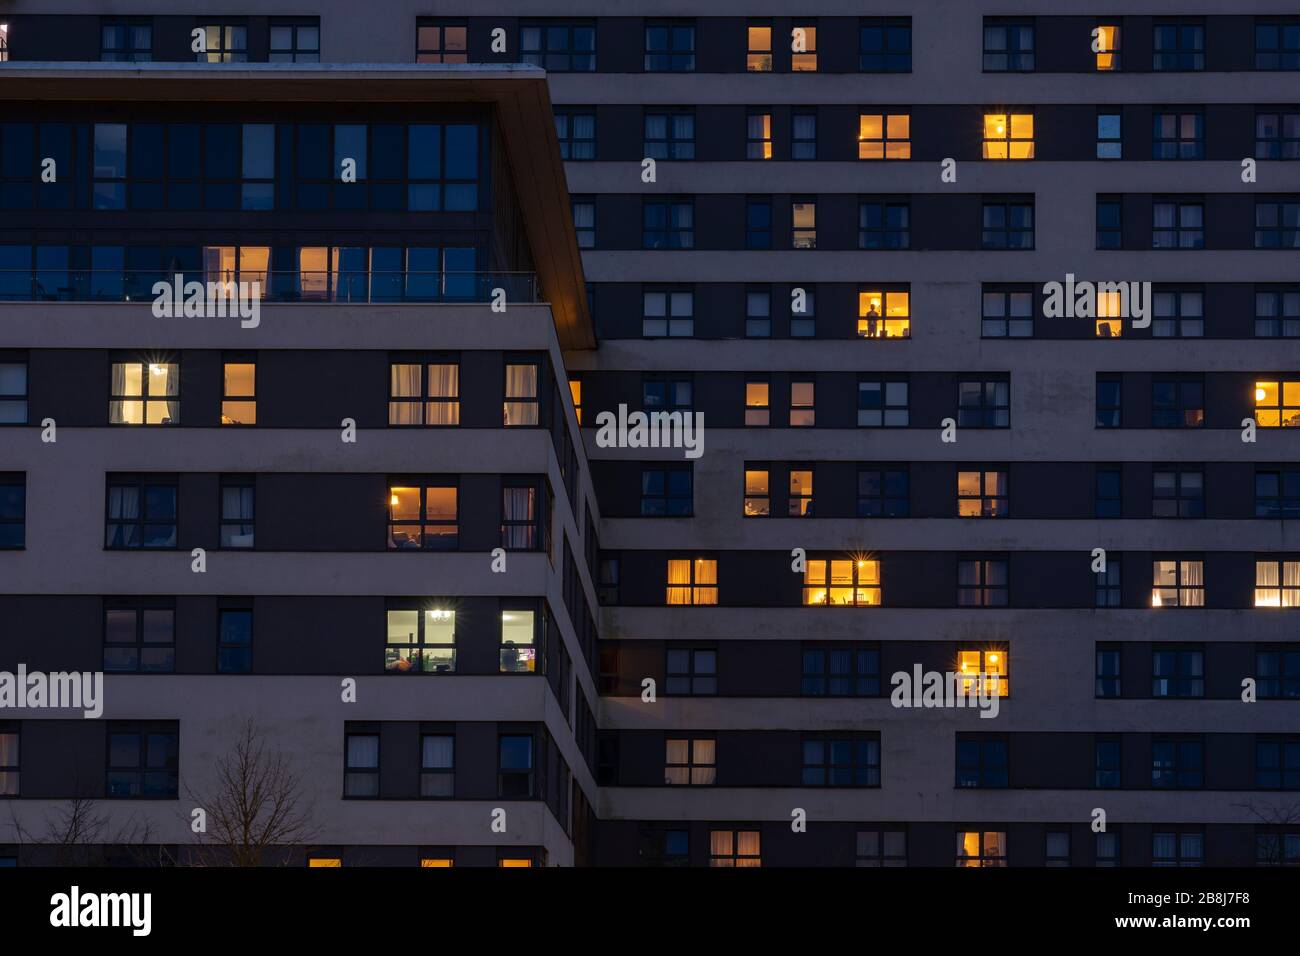 Appartamenti illuminati di notte in Skyline Plaza, un alto edificio per uffici ristrutturato, nel Regno Unito. concetto: mercato degli affitti, interruzioni di corrente, investimenti immobiliari Foto Stock